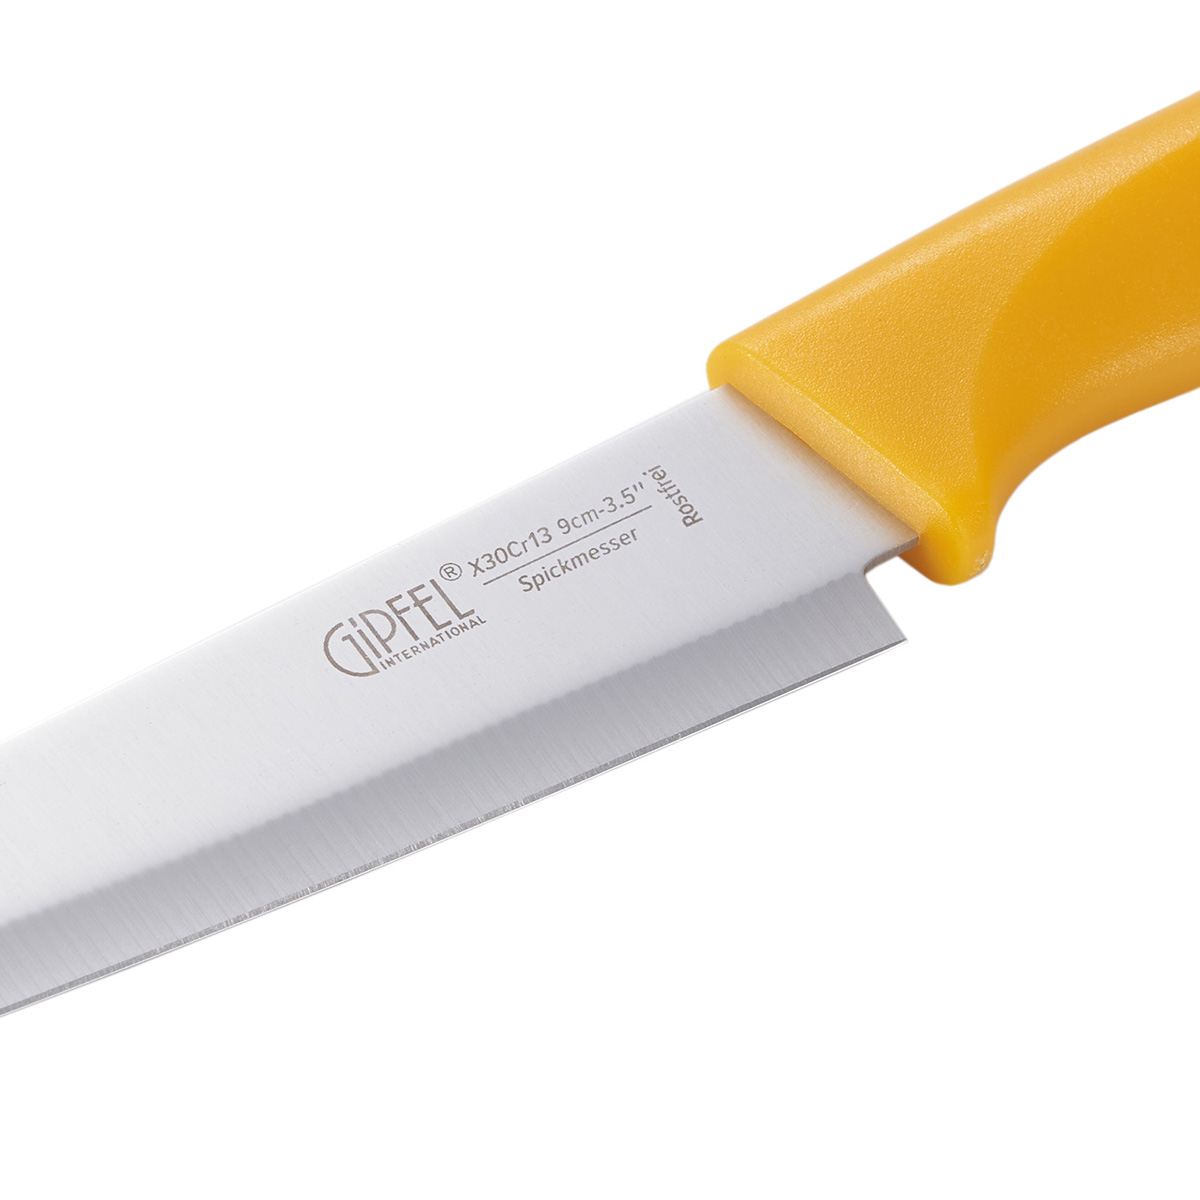 Нож для чистки овощей Gipfel Sorti 52035 9 см фото